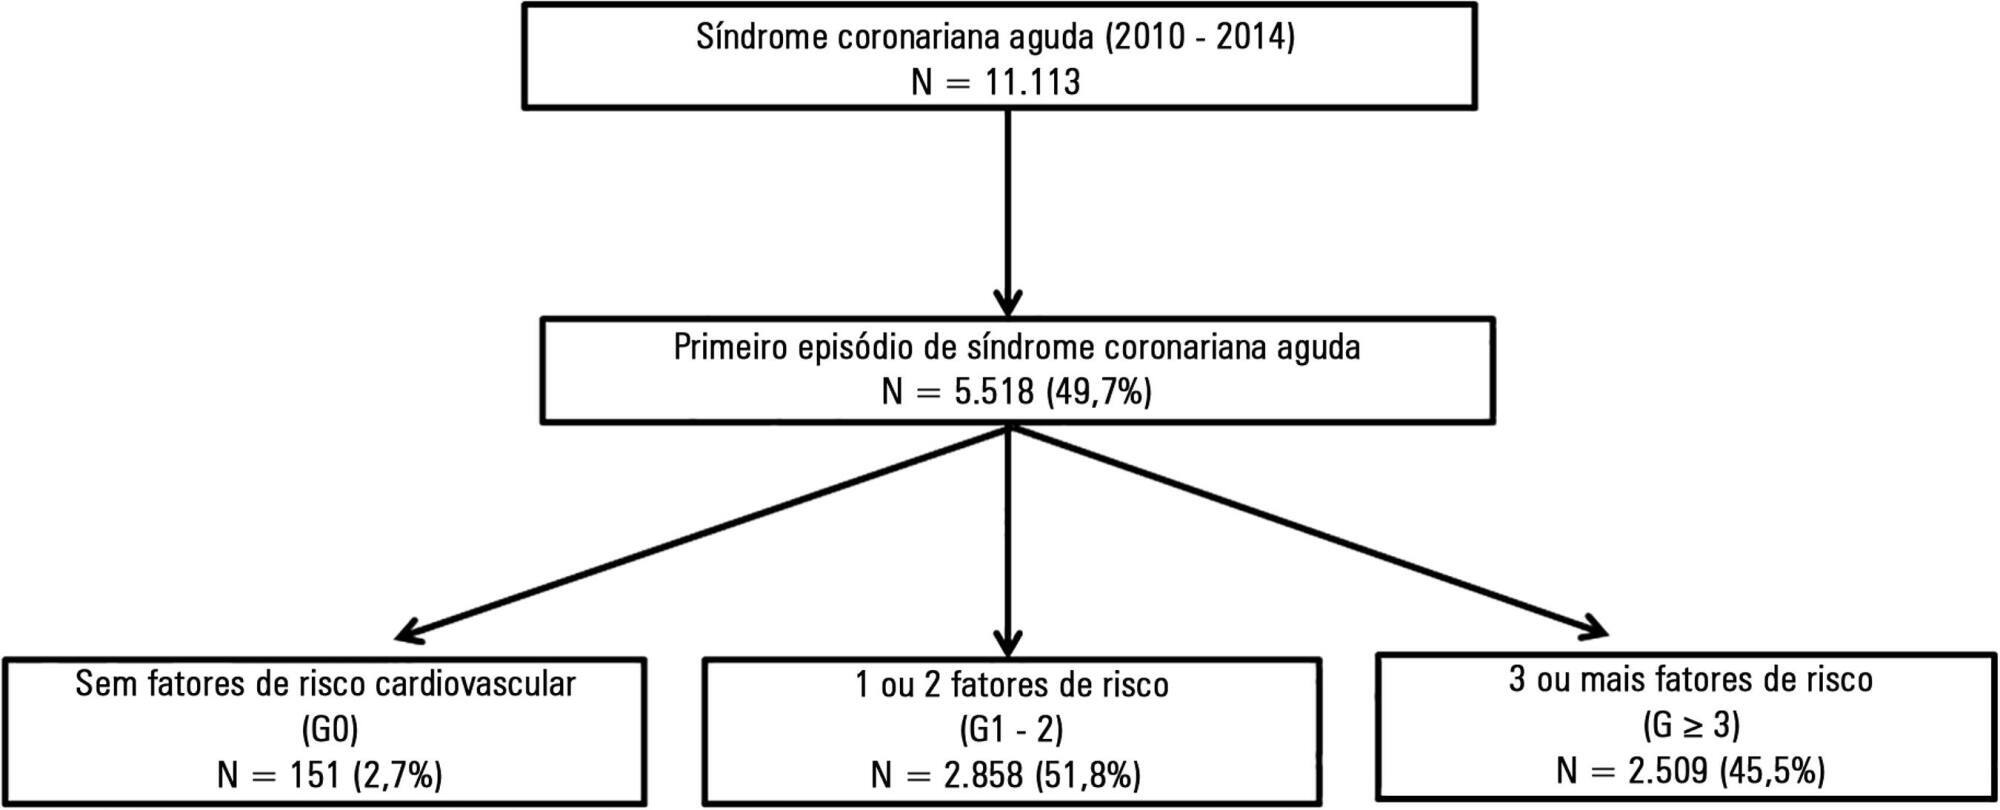 Paradoxo dos fatores de risco na ocorrência de parada cardiorrespiratória em pacientes com síndrome coronária aguda